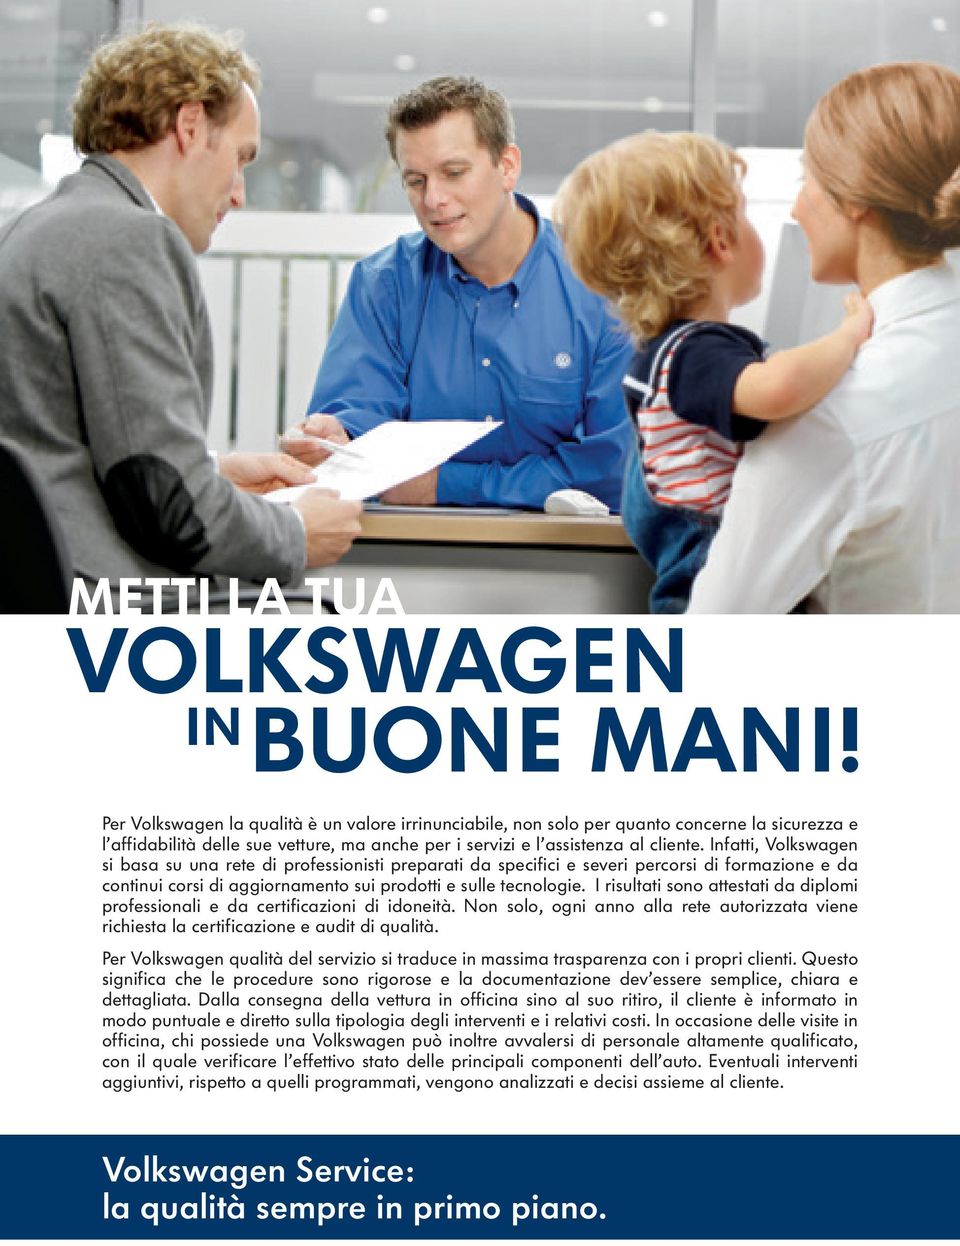 Infatti, Volkswagen si basa su una rete di professionisti preparati da specifici e severi percorsi di formazione e da continui corsi di aggiornamento sui prodotti e sulle tecnologie.